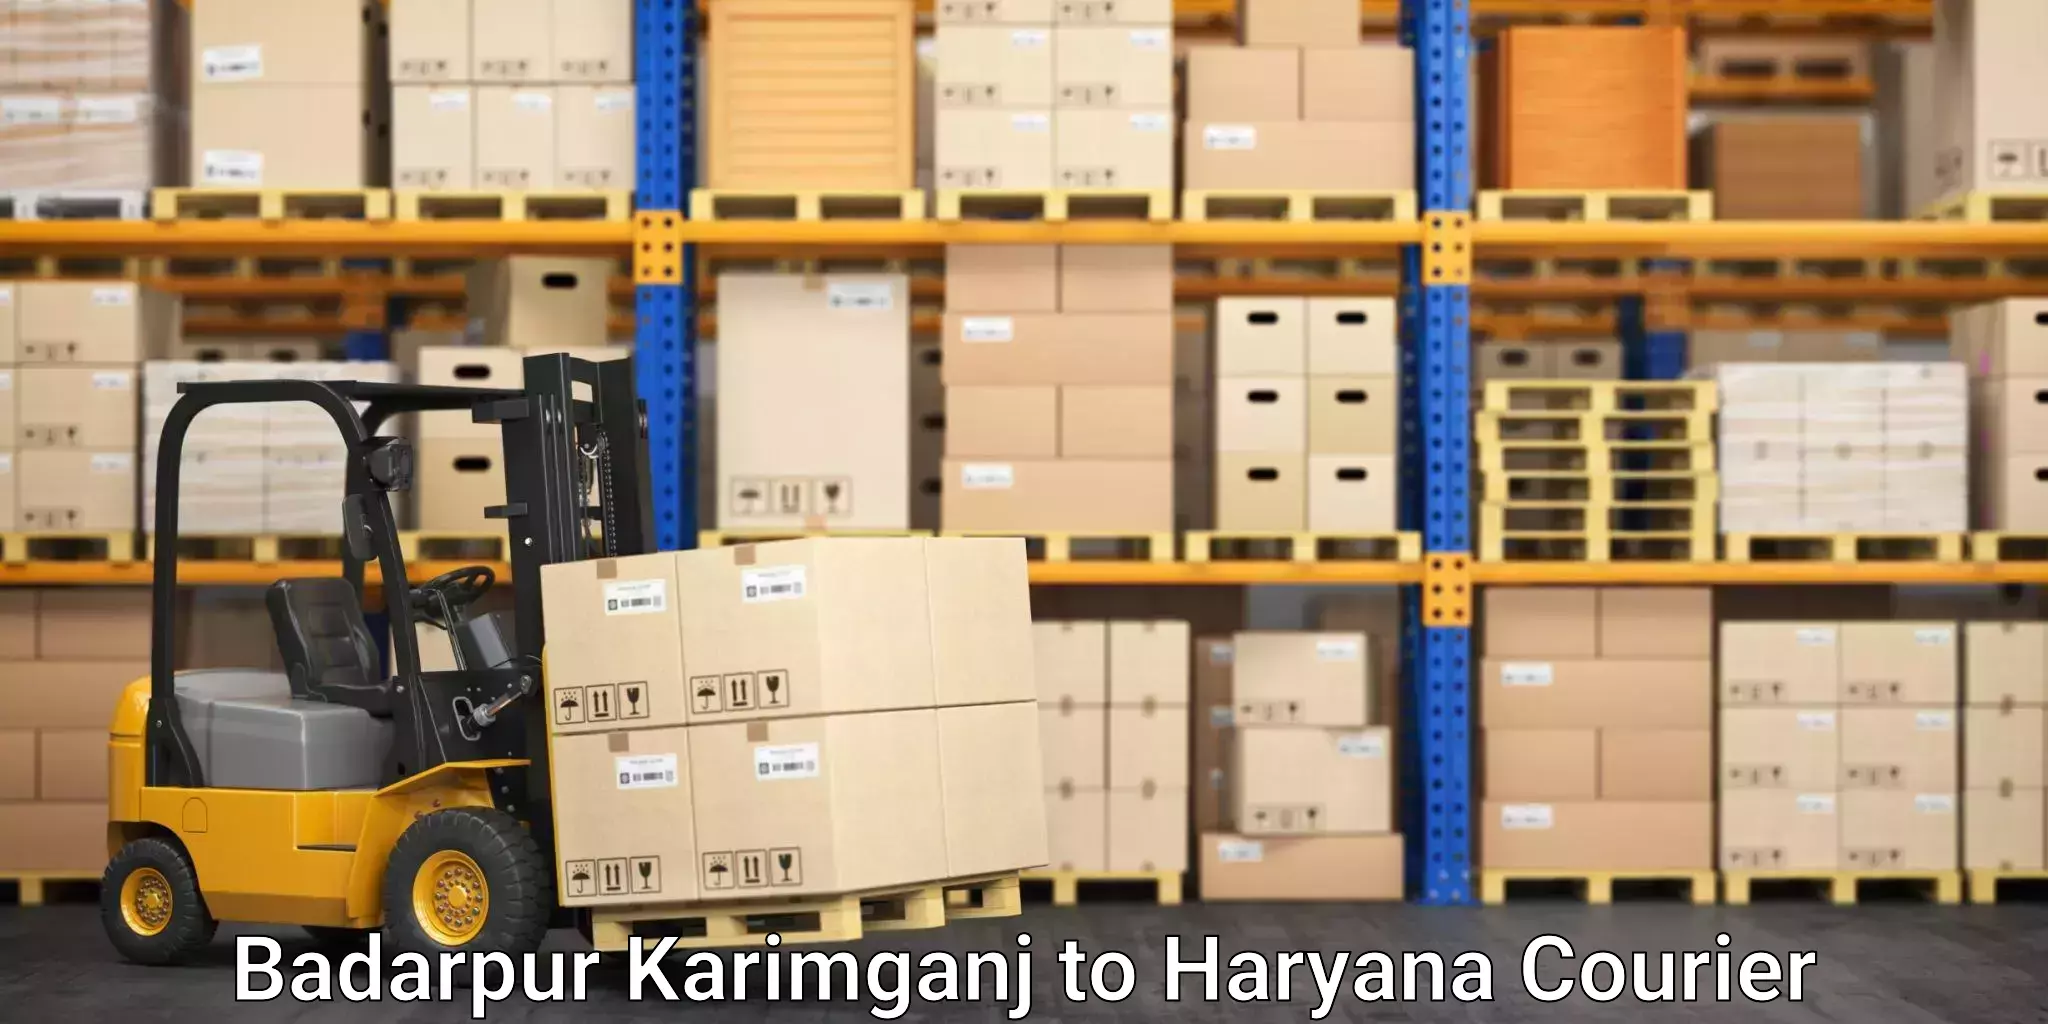 Efficient shipping platforms Badarpur Karimganj to Siwani